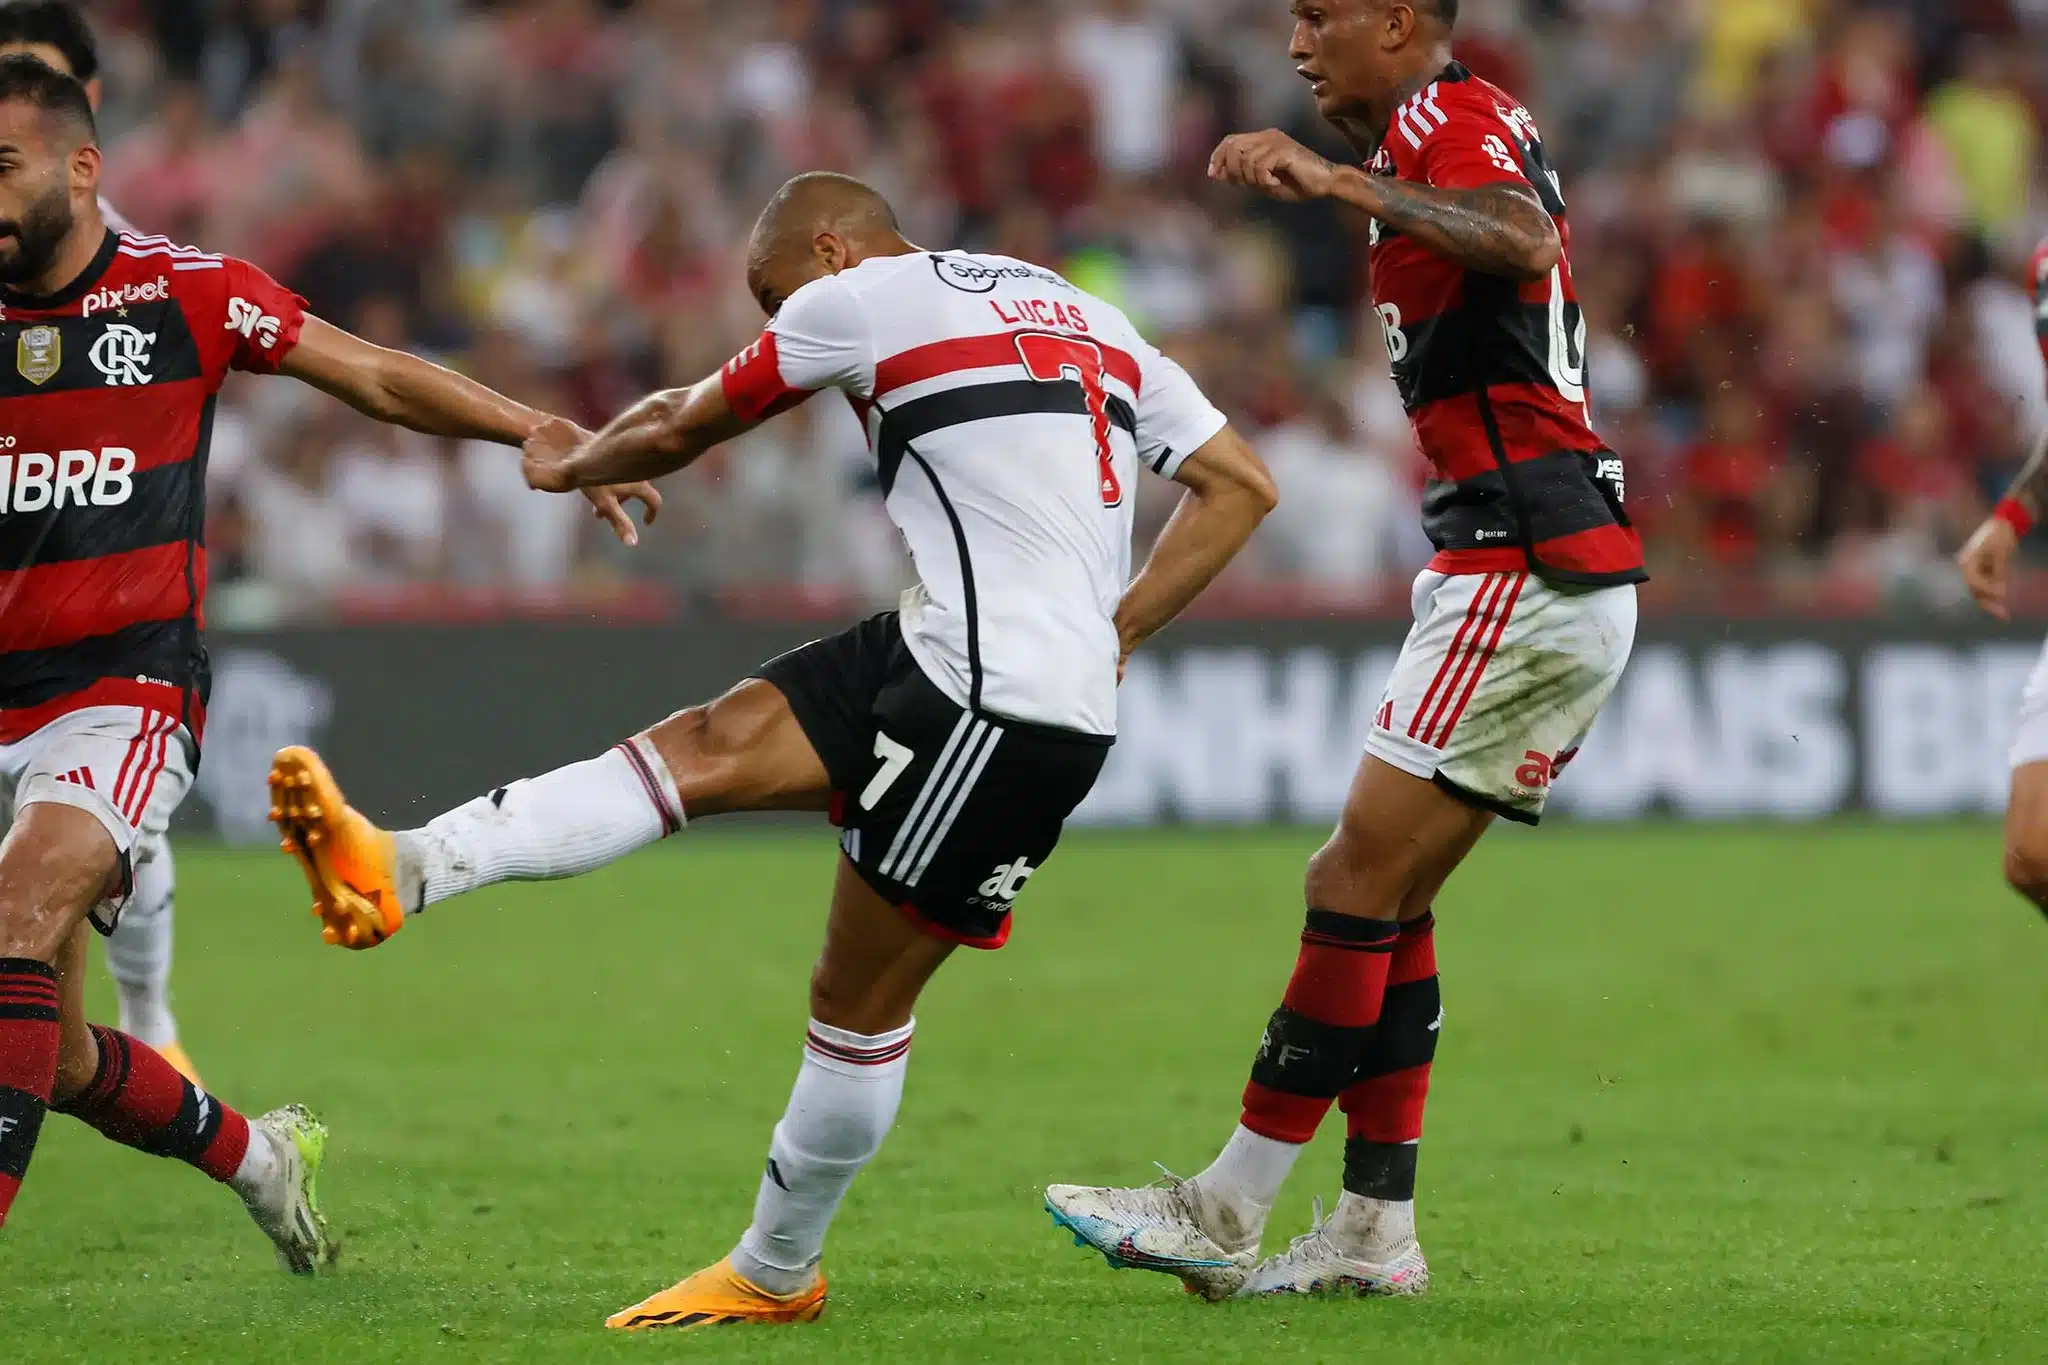 O São Paulo conseguirá vencer o Flamengo? Souza responde